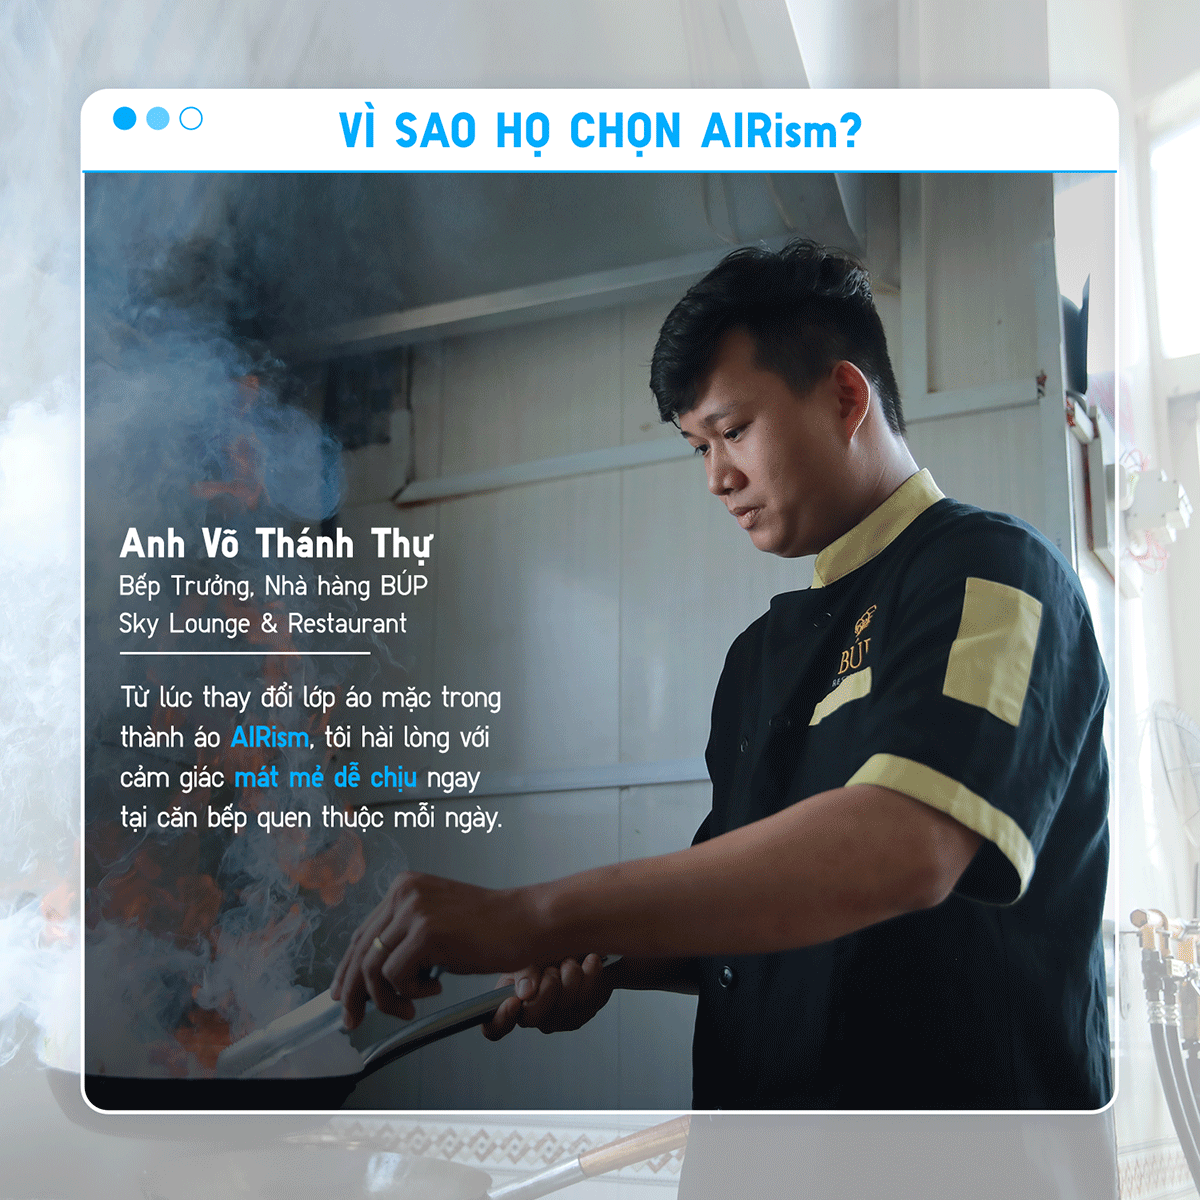 98% người dùng Việt tham gia trải nghiệm và hài lòng về sản phẩm AIRism của UNIQLO - 5